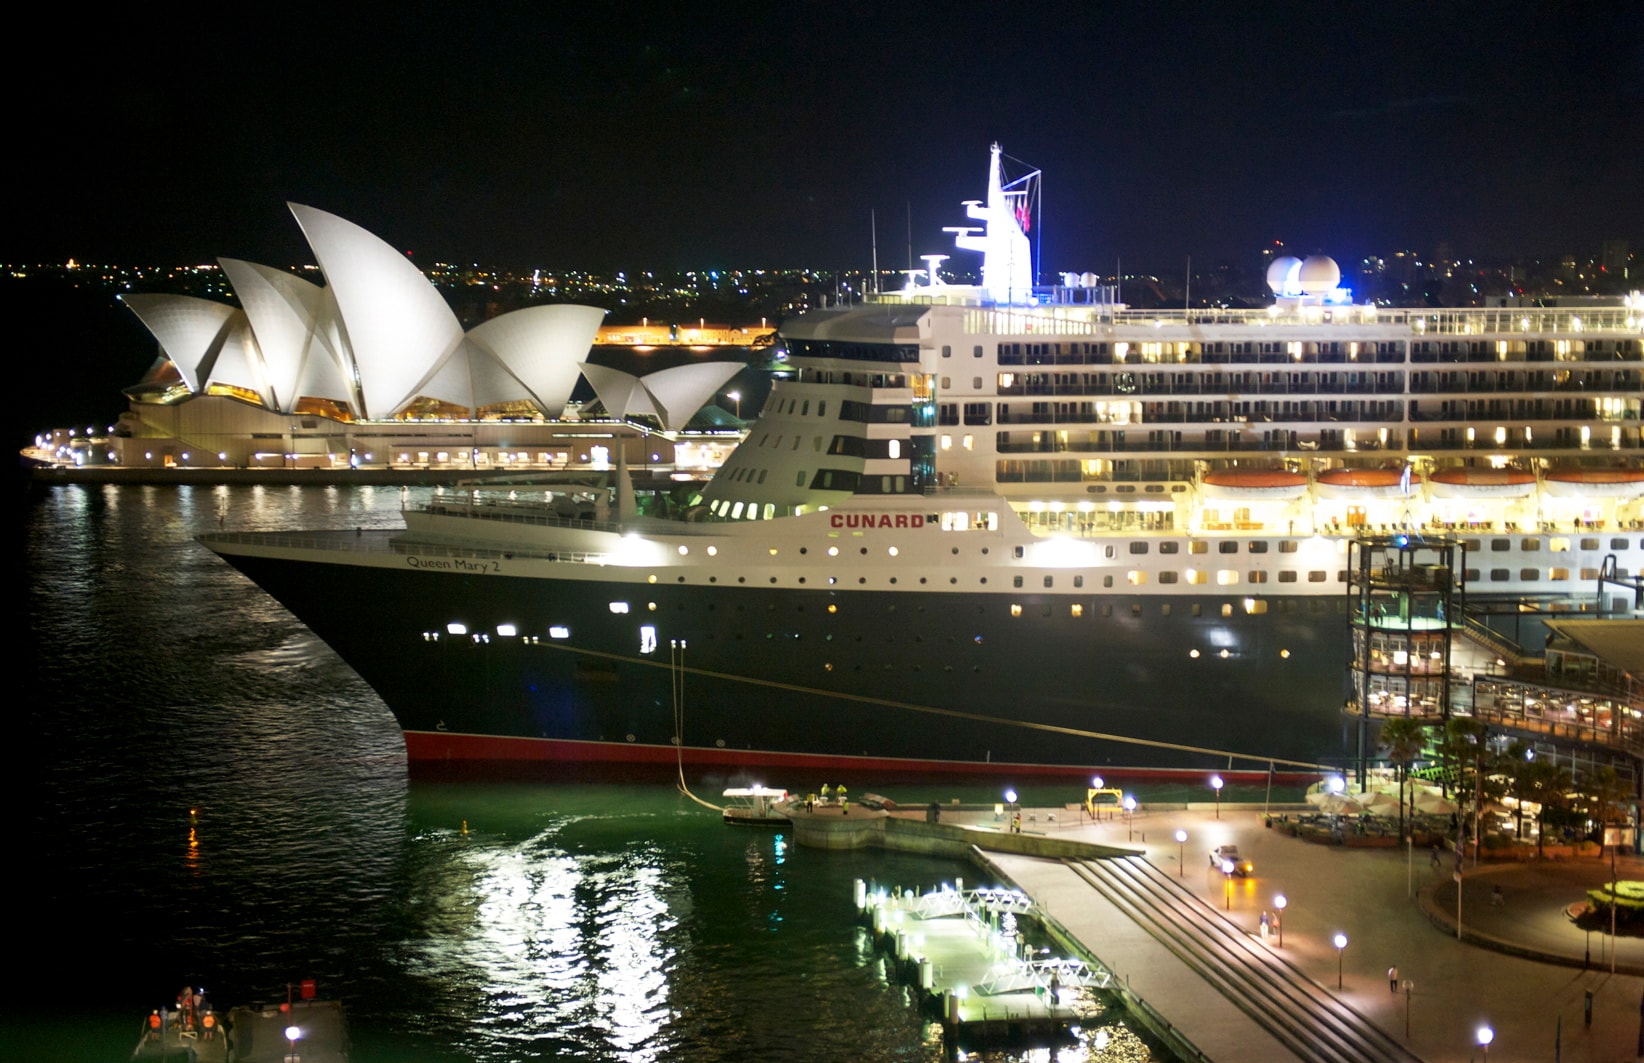 Queen Elizabeth in Sydney Harbour